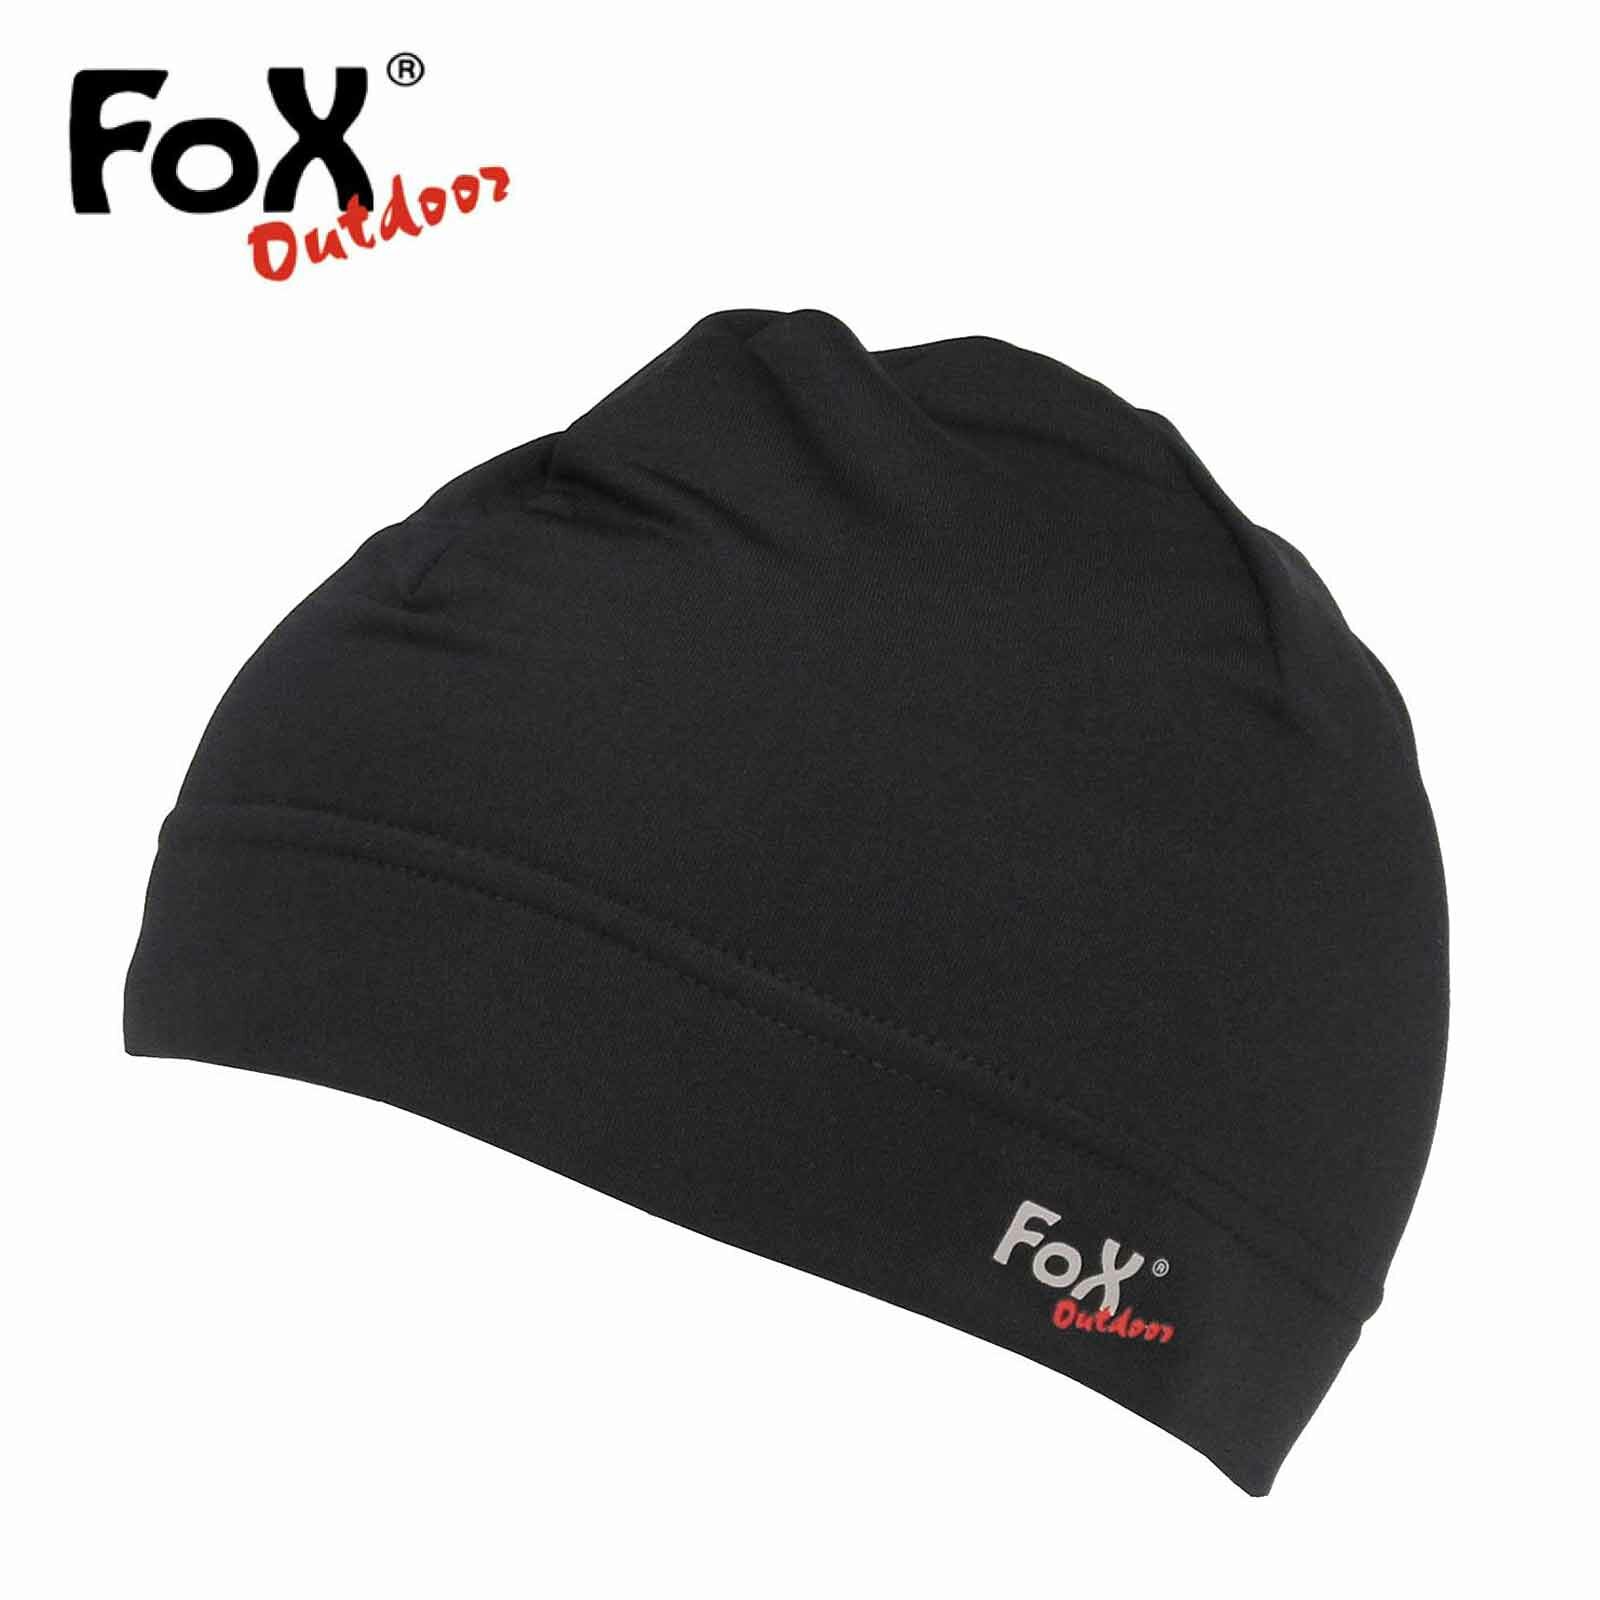 Stirnband Fox Outdoor Softshell schwarz 